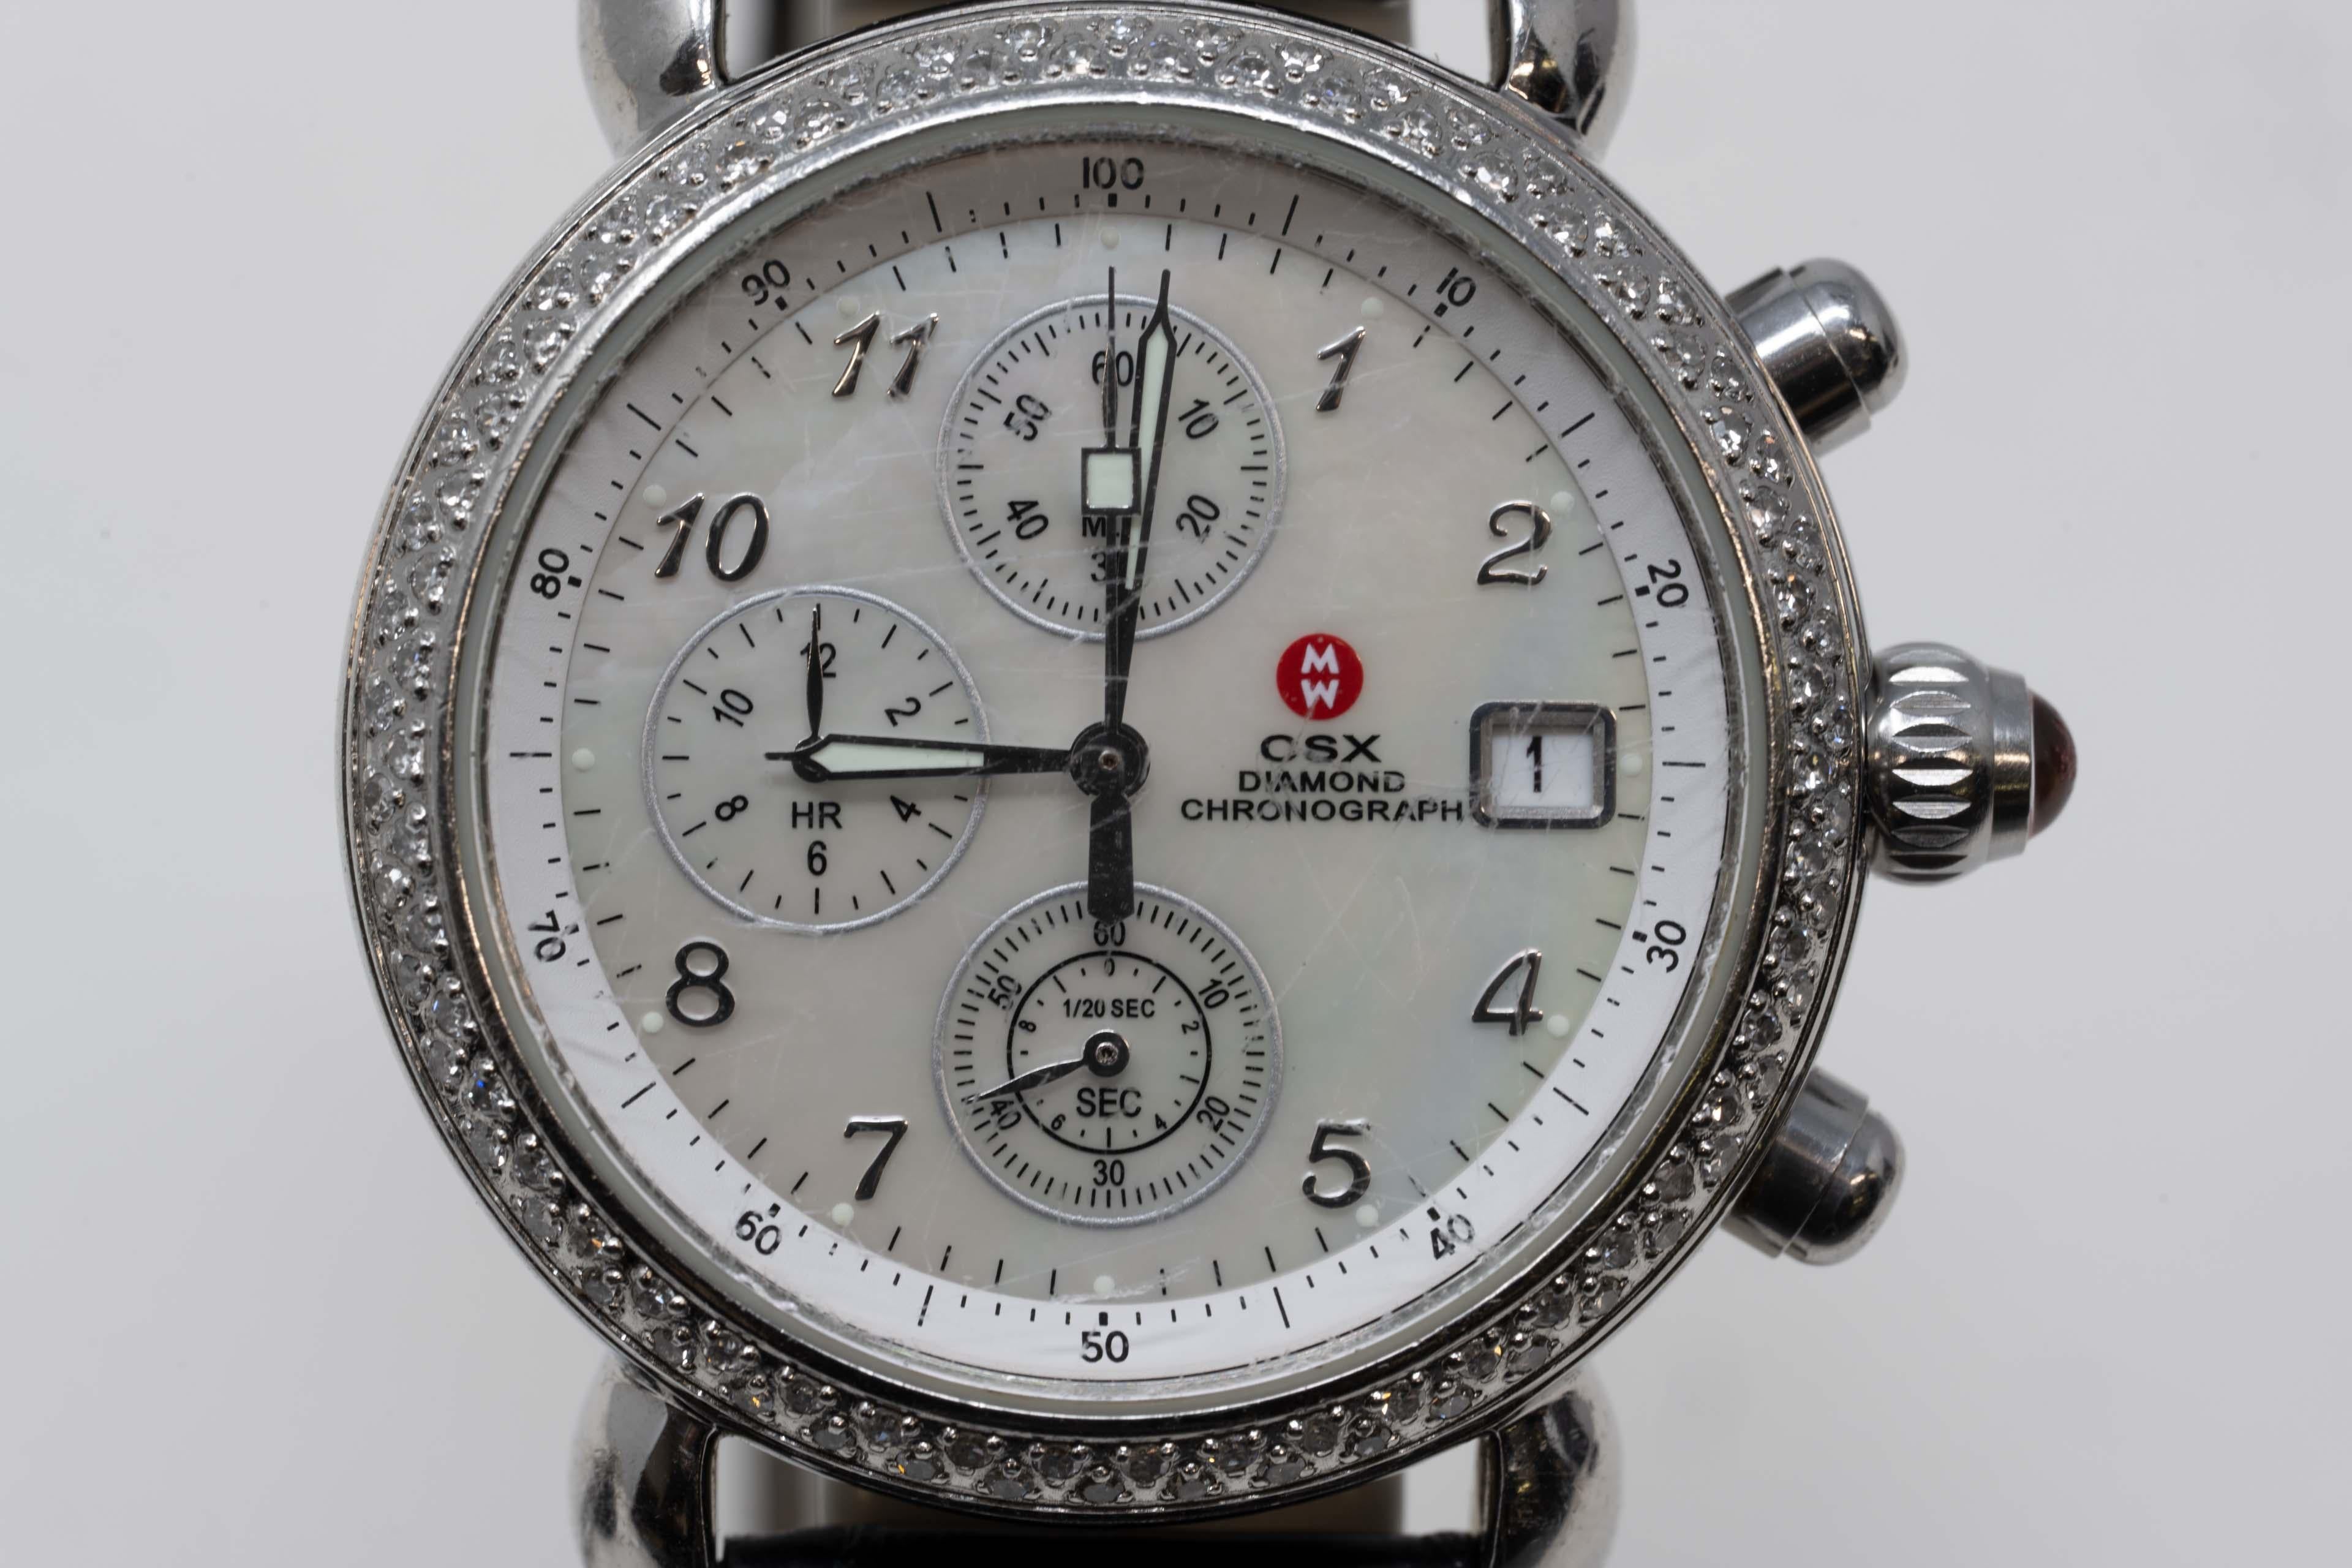 Michele C S X Diamant-Chronograph Quarz-Lederbanduhr. Die Uhr hat ein perlmuttfarbenes Zifferblatt mit echten Diamantsteinen und ist aus Edelstahl. Das Armband ist aus Leder und mit einer verstellbaren Dornschließe ausgestattet.